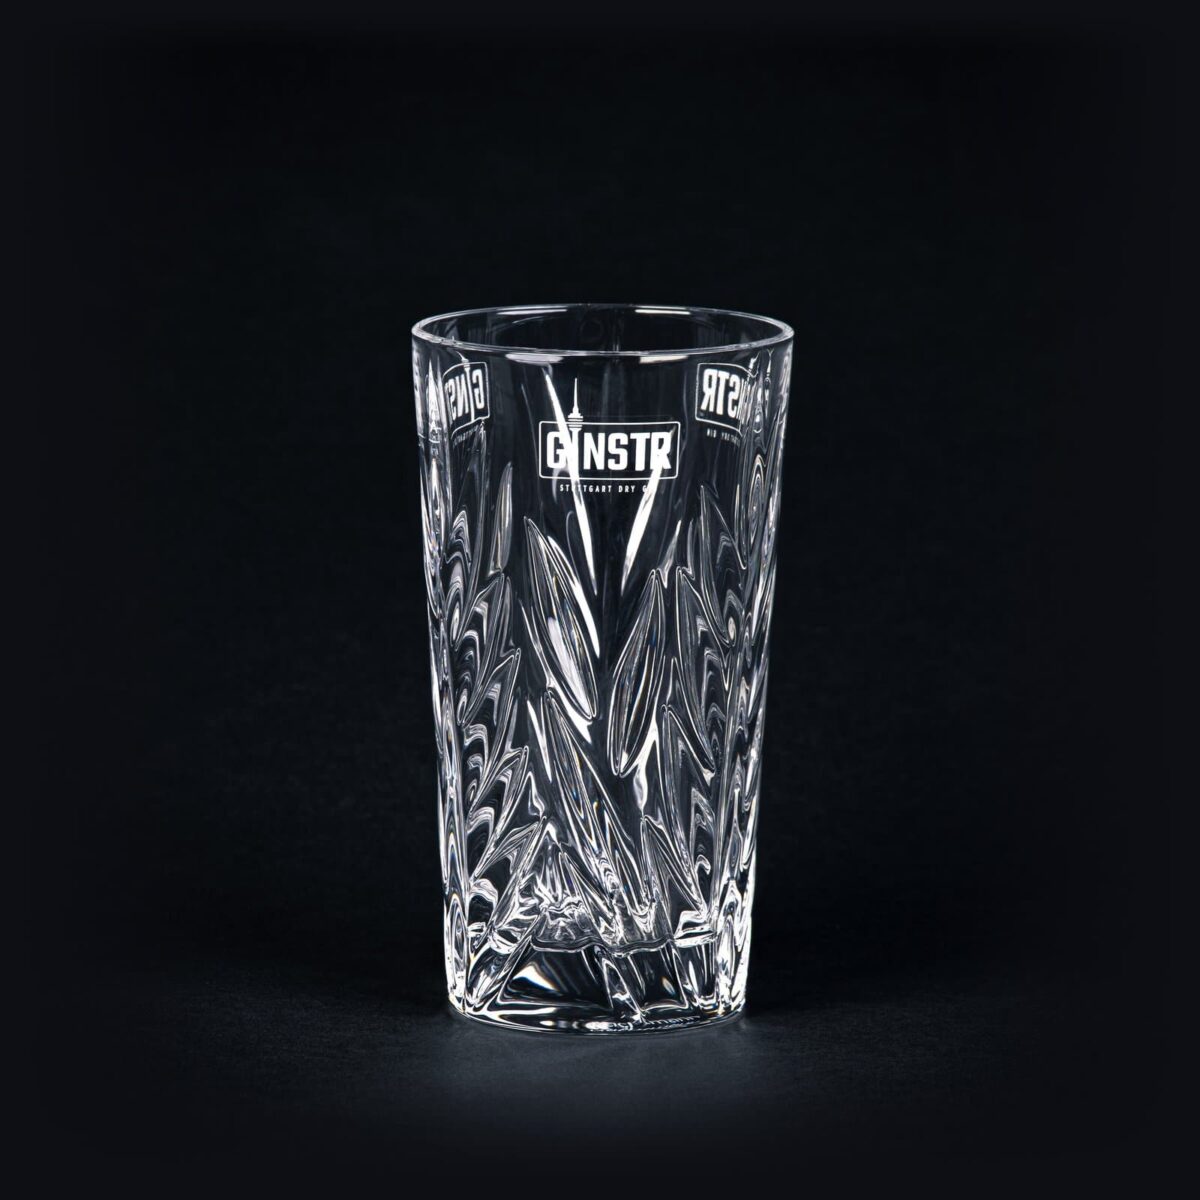 GINSTR Originalt krystalglas